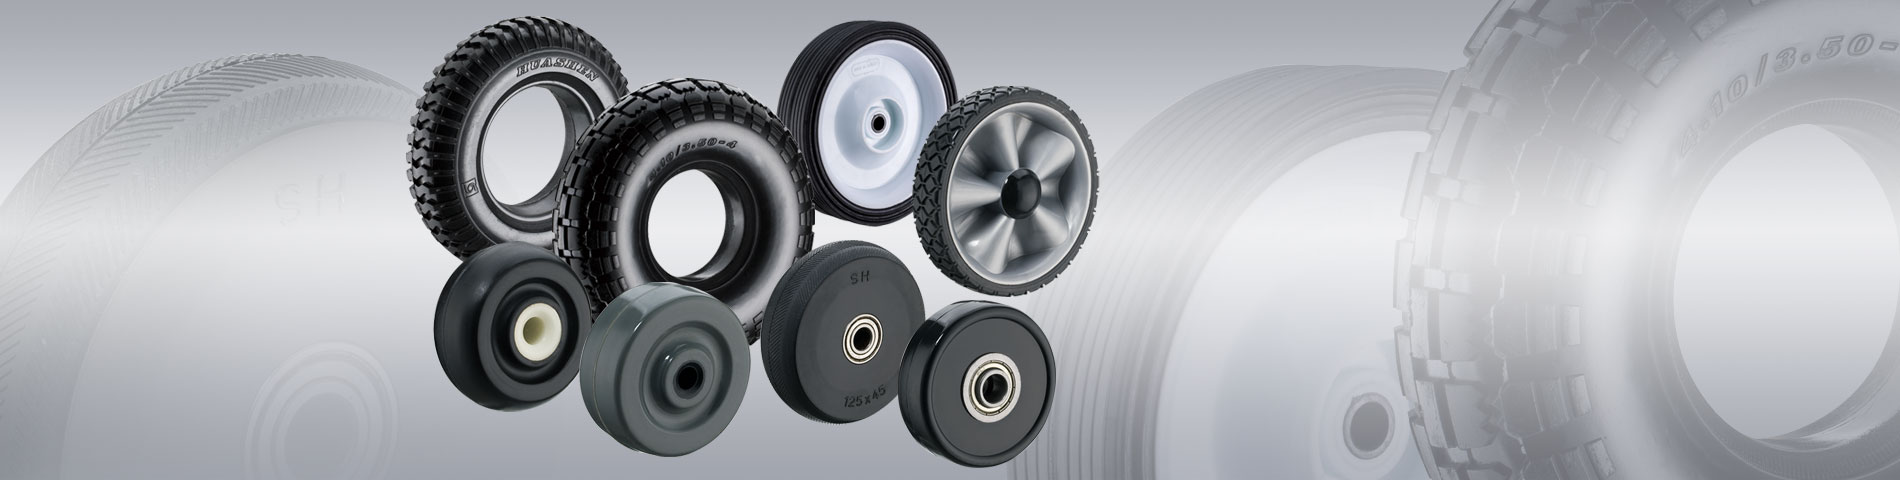 華伸橡膠 提供您多樣性的 橡膠輪製造